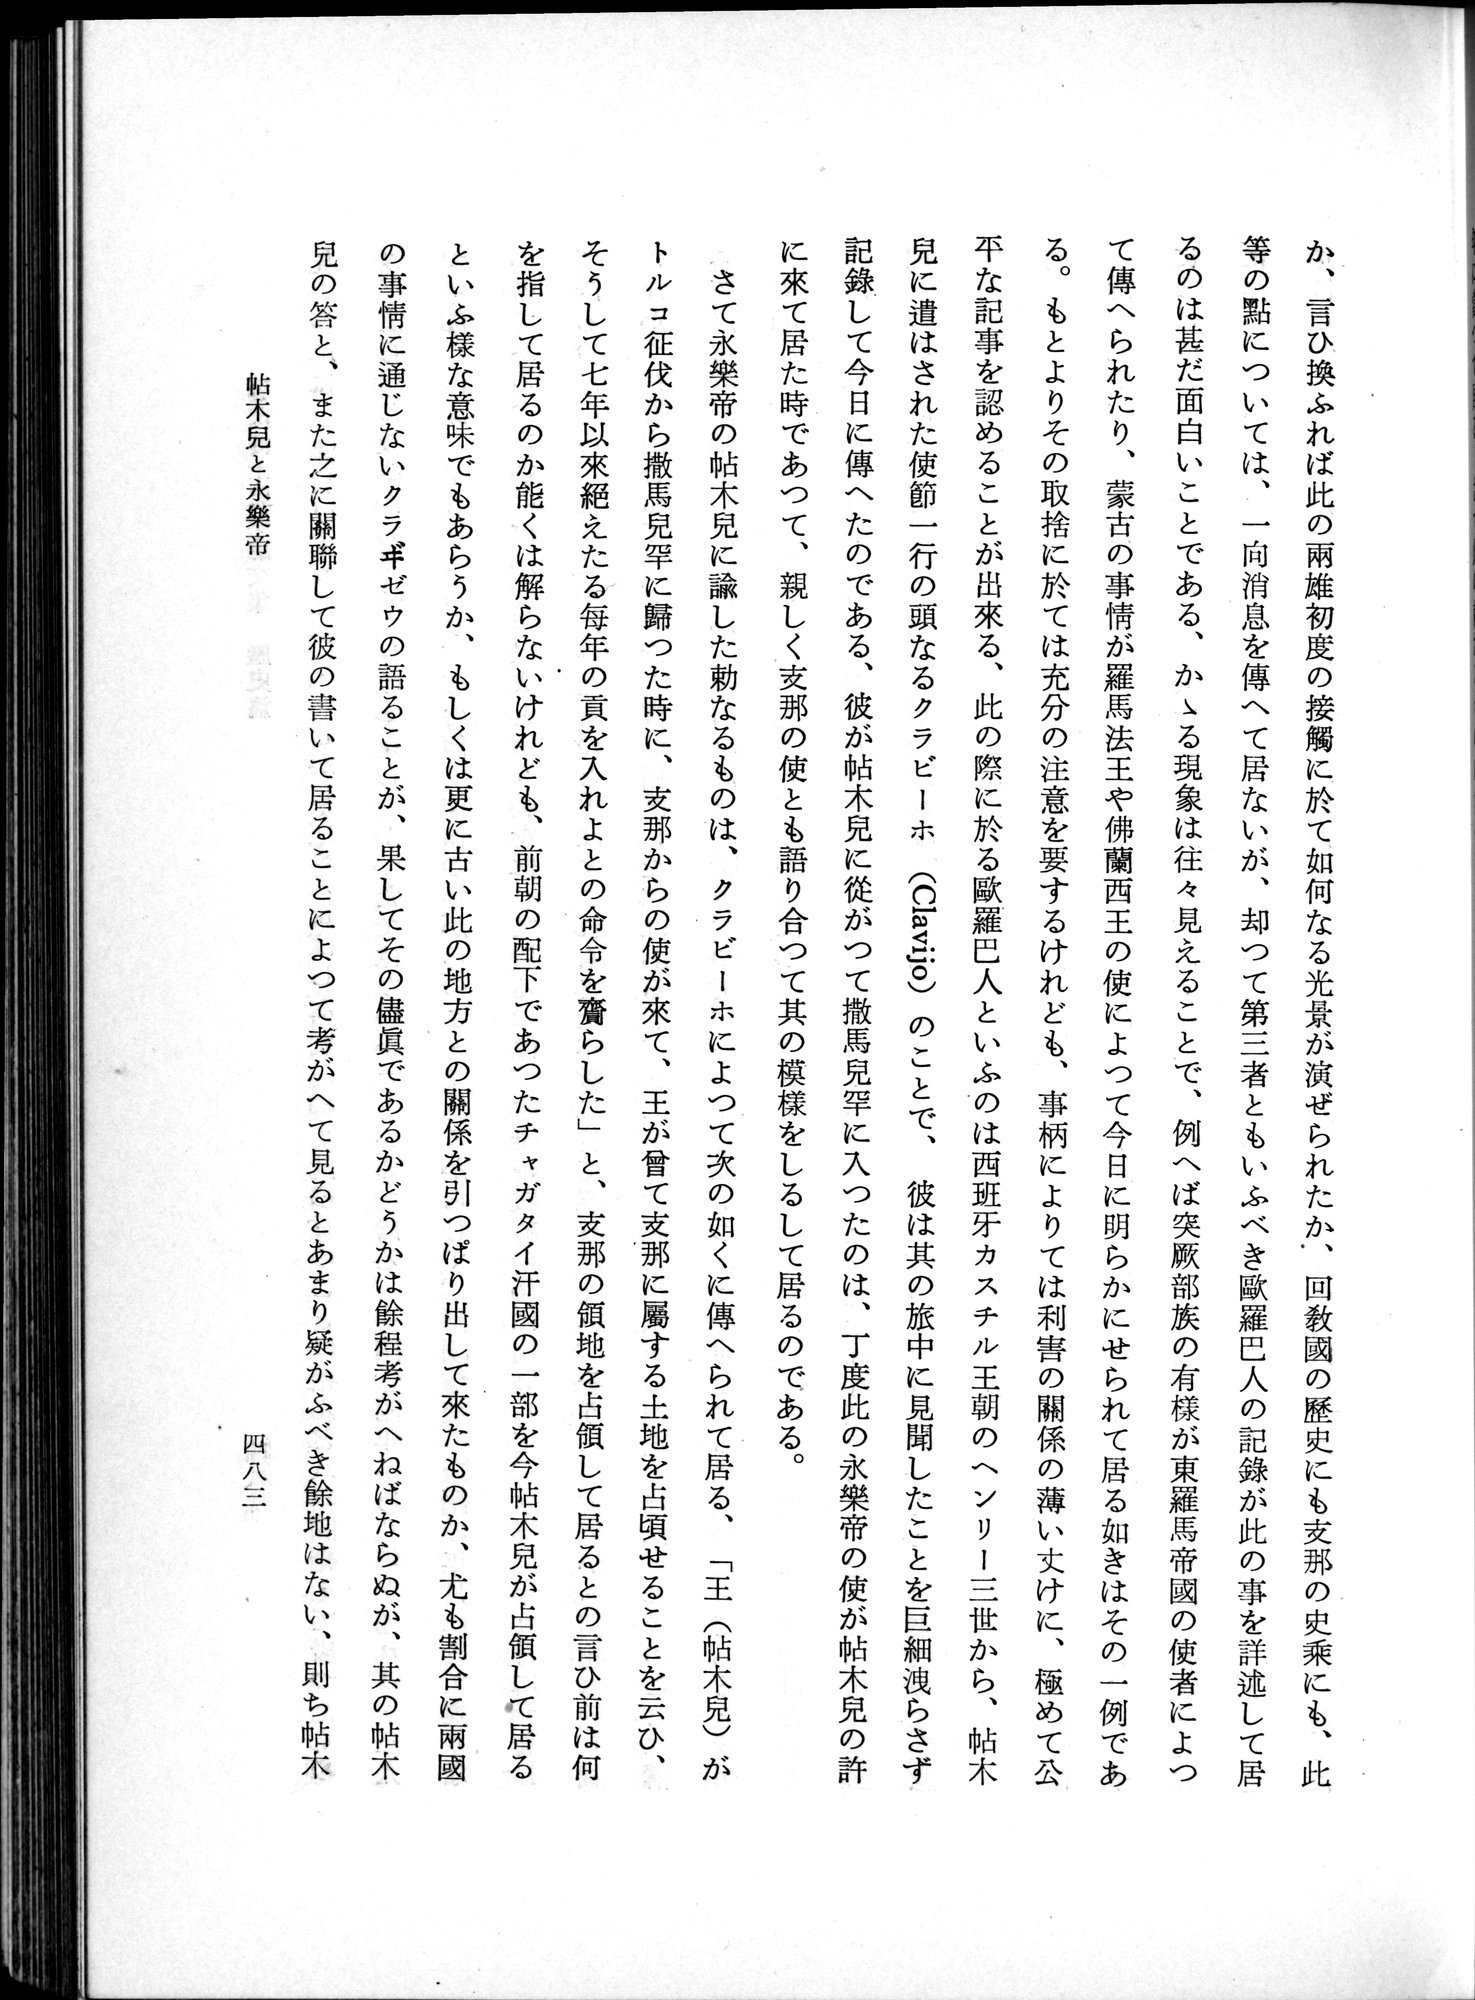 羽田博士史学論文集 : vol.1 / Page 521 (Grayscale High Resolution Image)